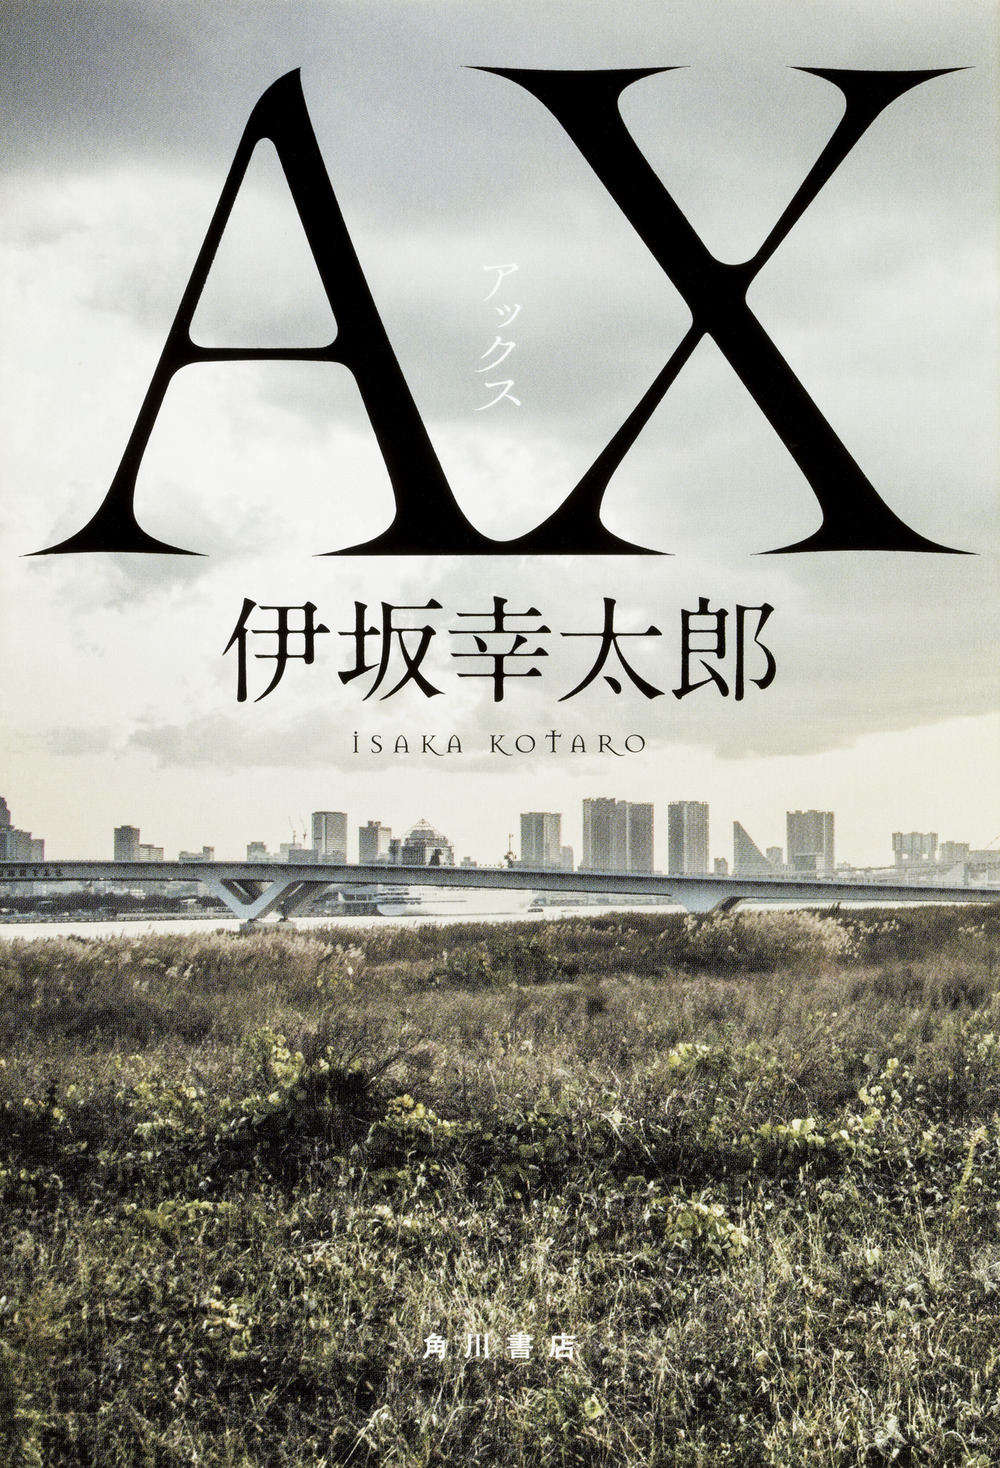 AX（アックス）の商品画像